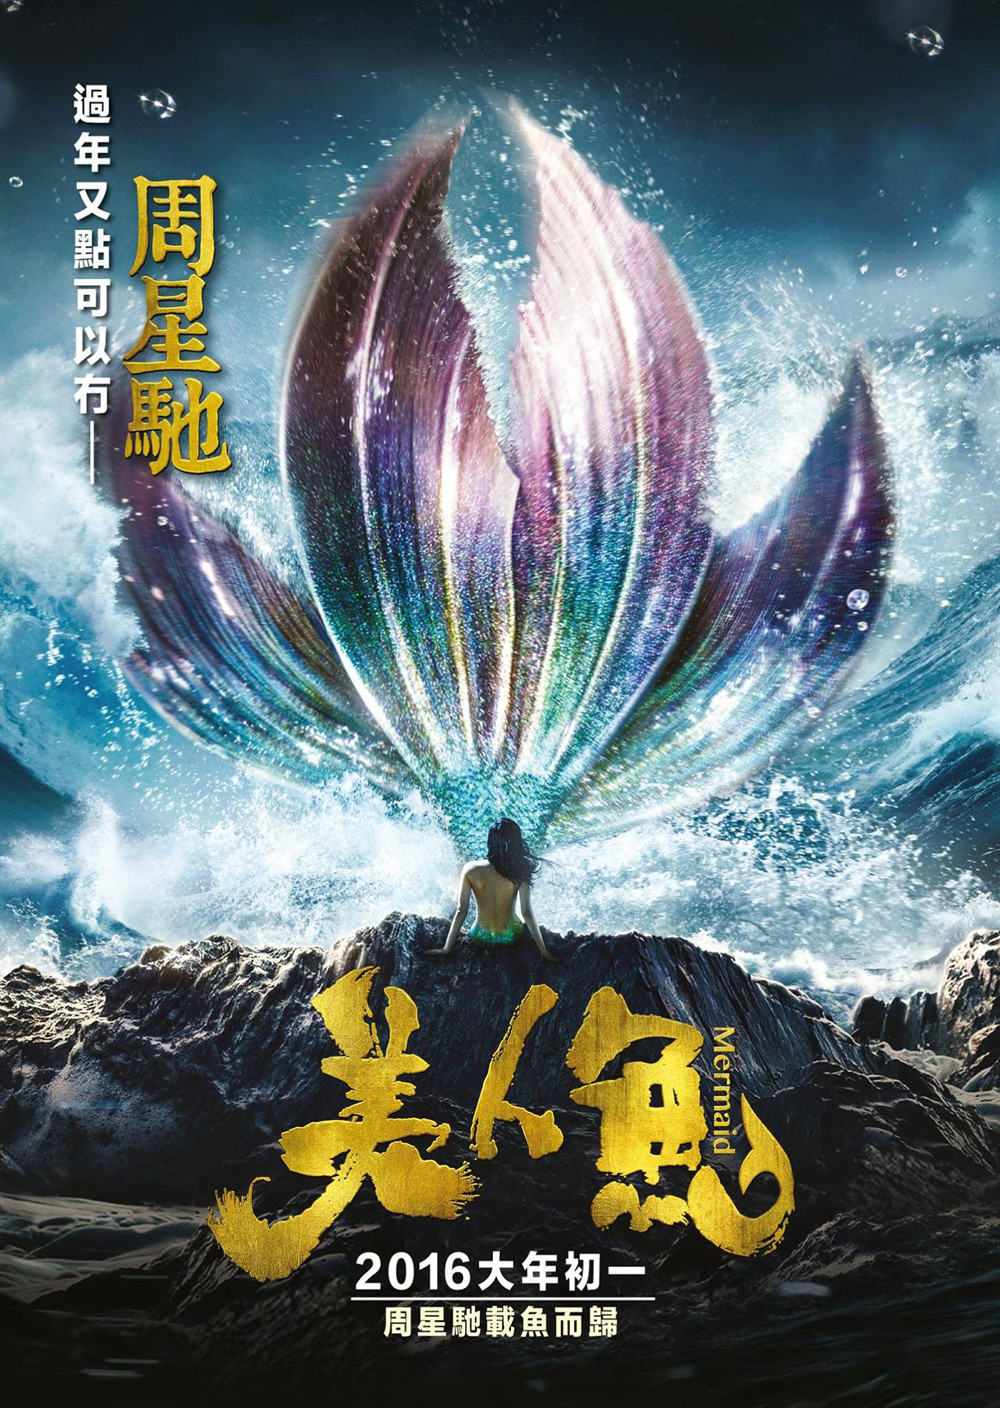 Banner Phim Mỹ nhân ngư (The Mermaid)